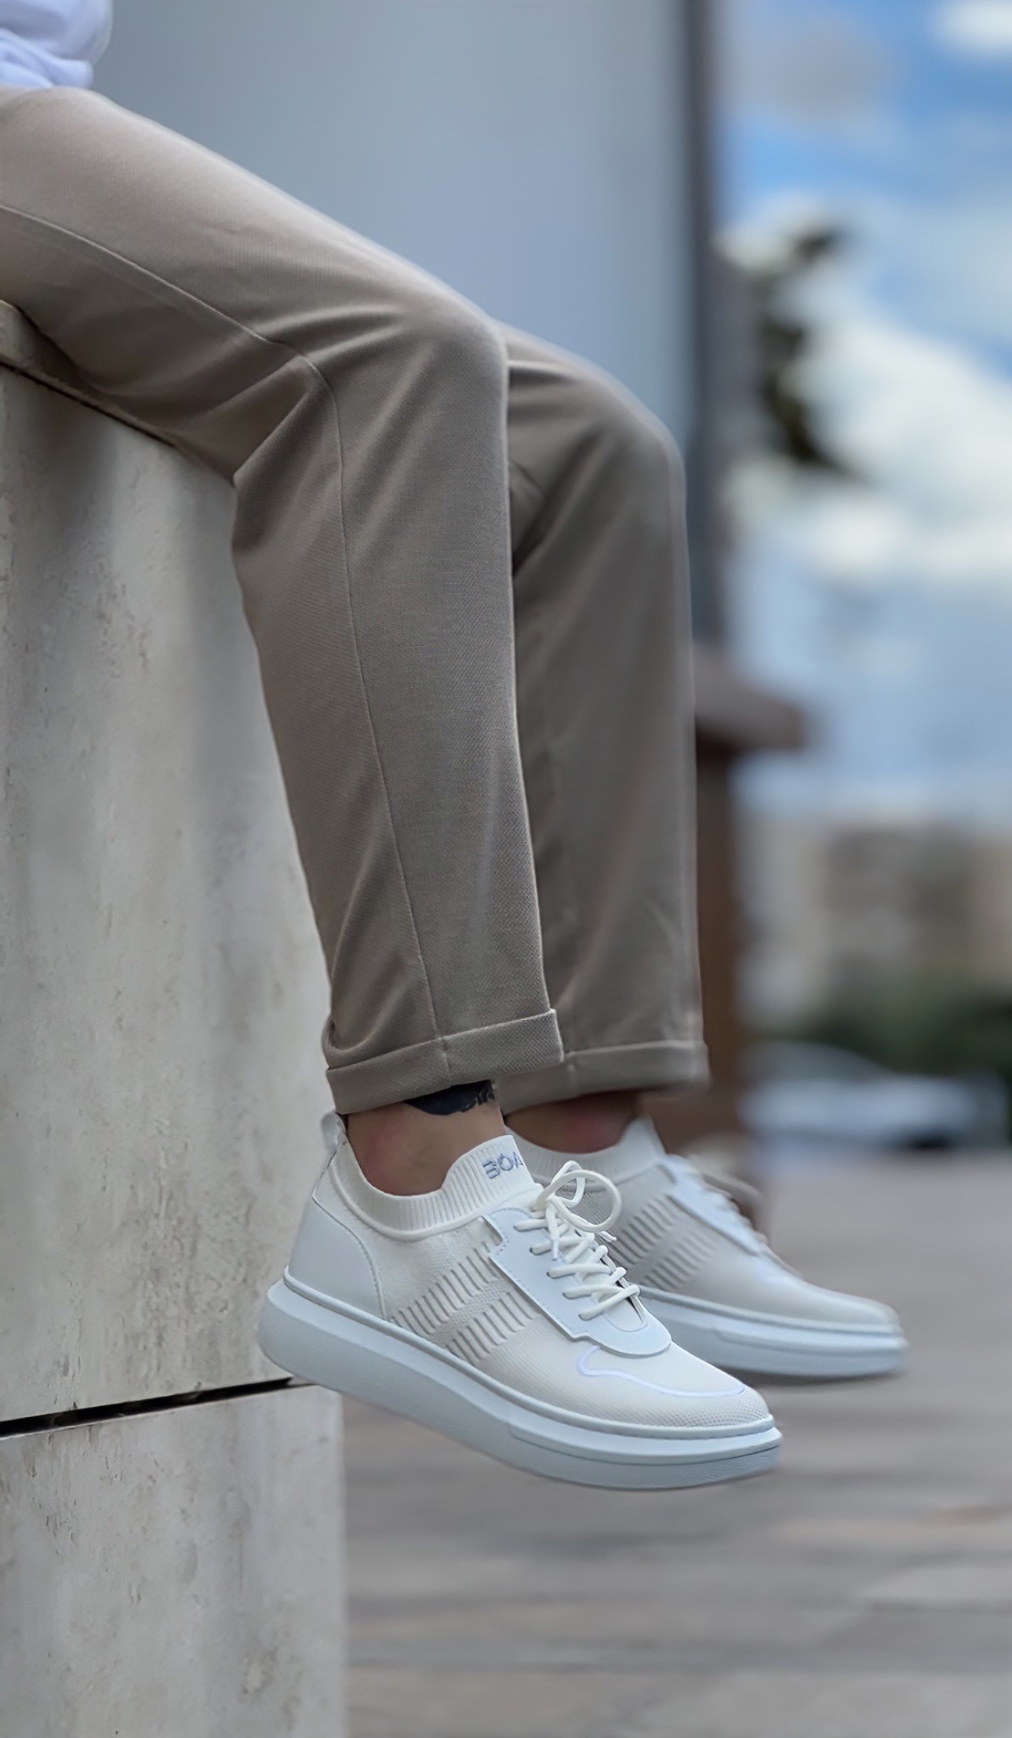 Lisinya946 Özel Örme Triko Tarz Beyaz Renk Spor Ayakkabı